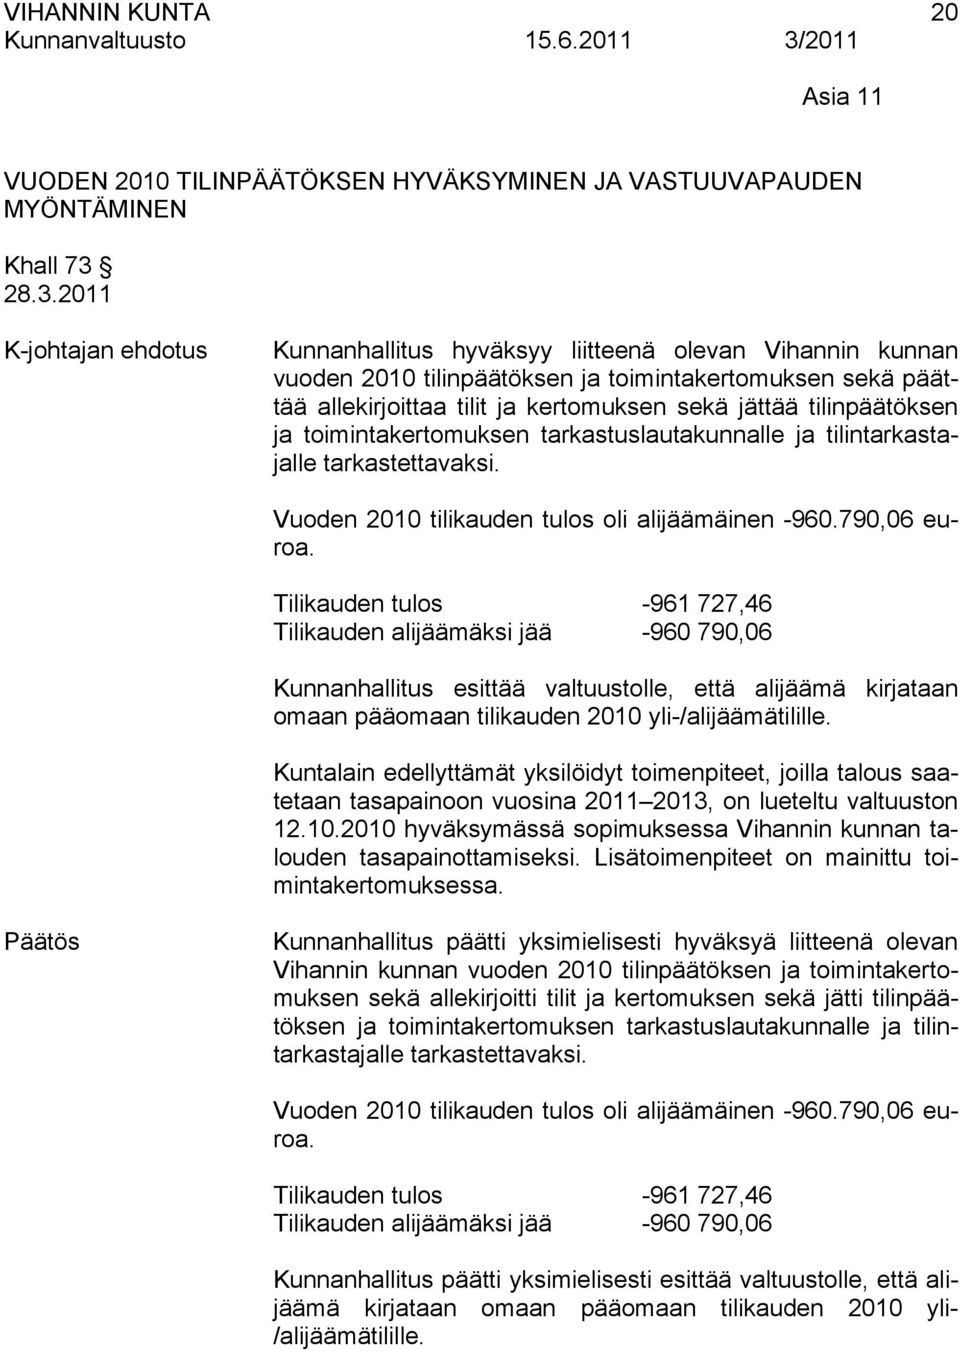 tilinpäätöksen ja toimintakertomuksen tarkastuslautakunnalle ja tilintarkastajalle tarkastettavaksi. Vuoden 2010 tilikauden tulos oli alijäämäinen -960.790,06 euroa.